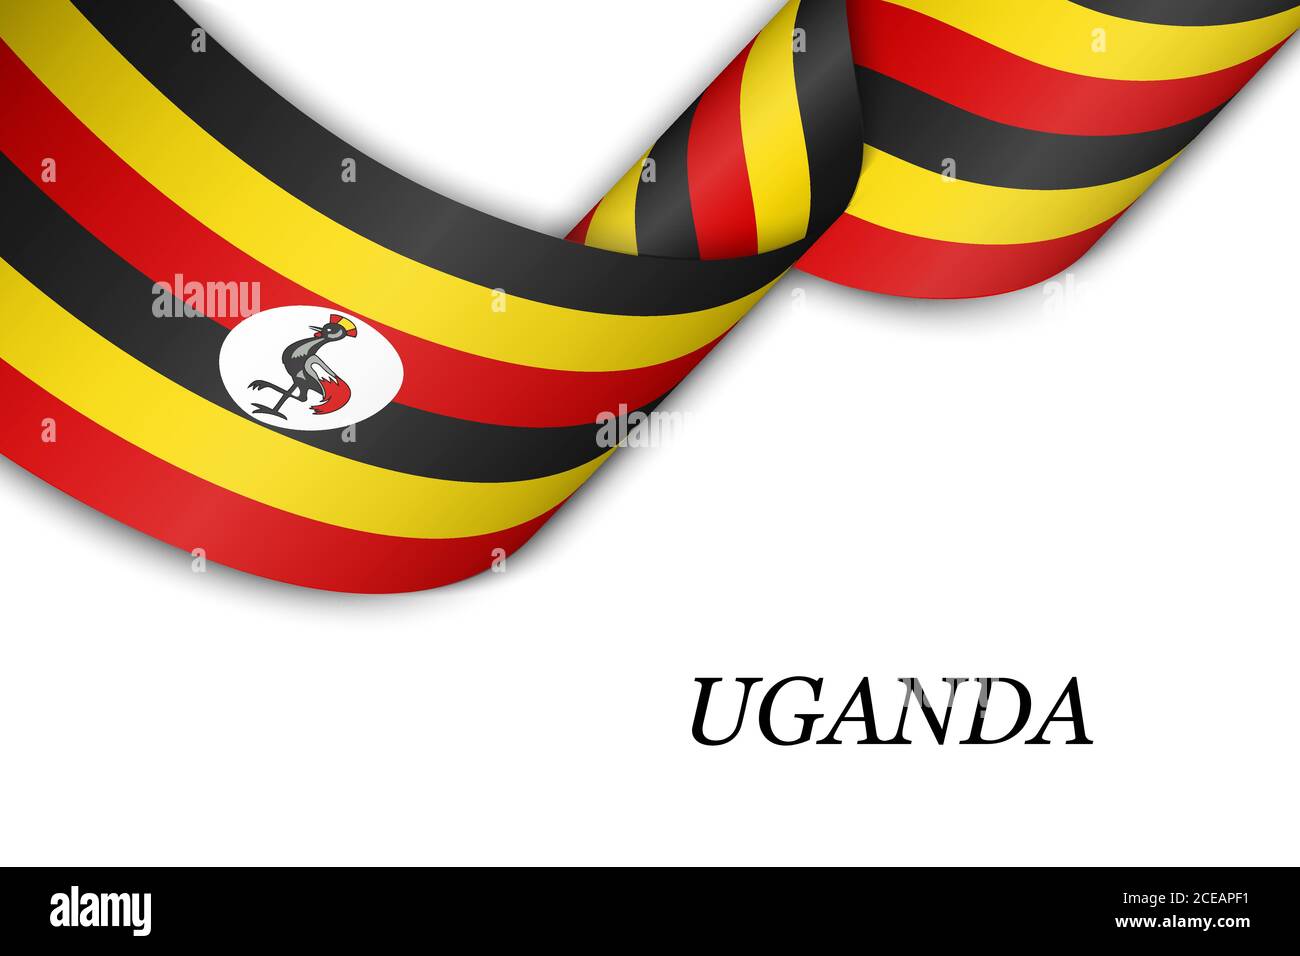 Nastro ondulato o banner con bandiera ugandese. Illustrazione Vettoriale